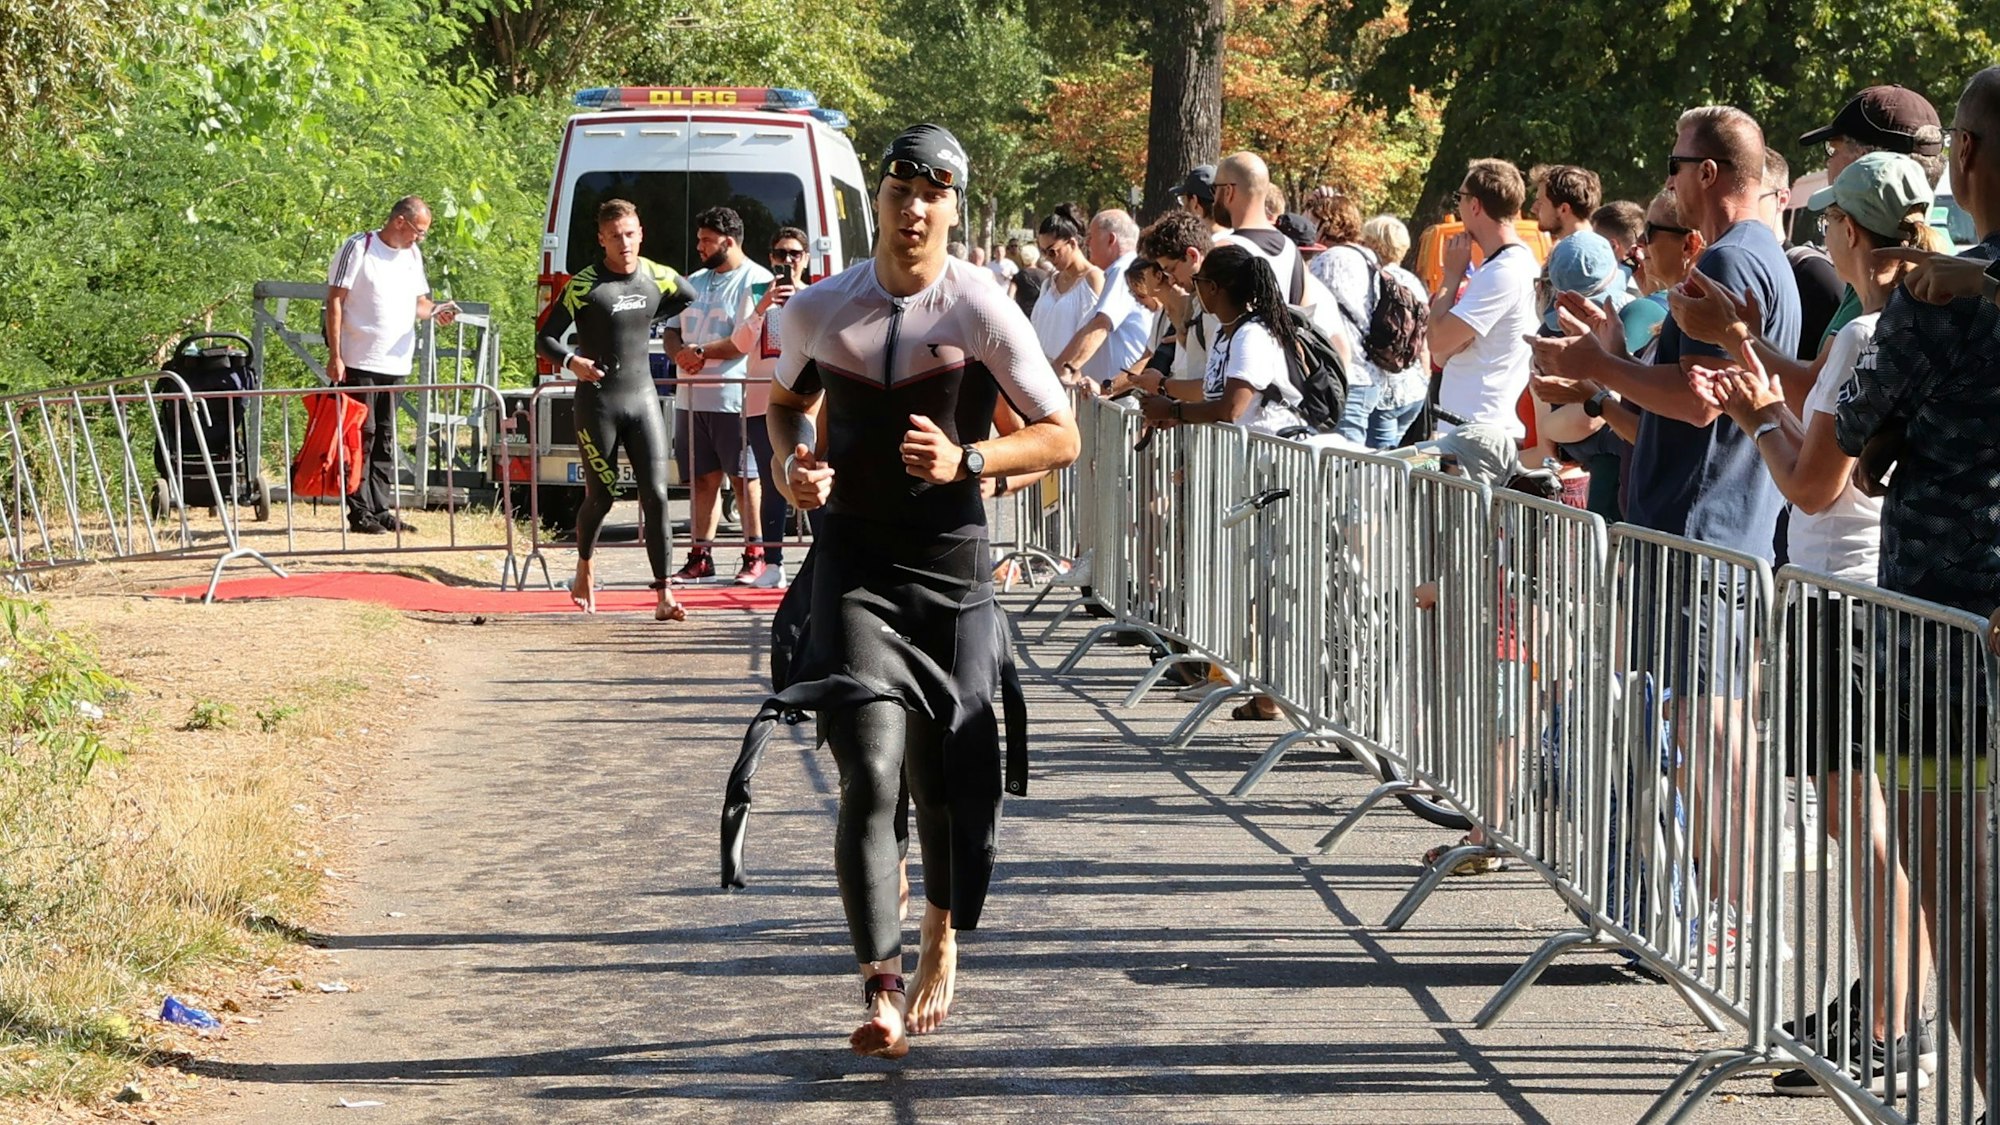 Ein Sportler mit halb ausgezogenem Neoprenanzug läuft über einen Weg. Rechts stehen Zuschauer.